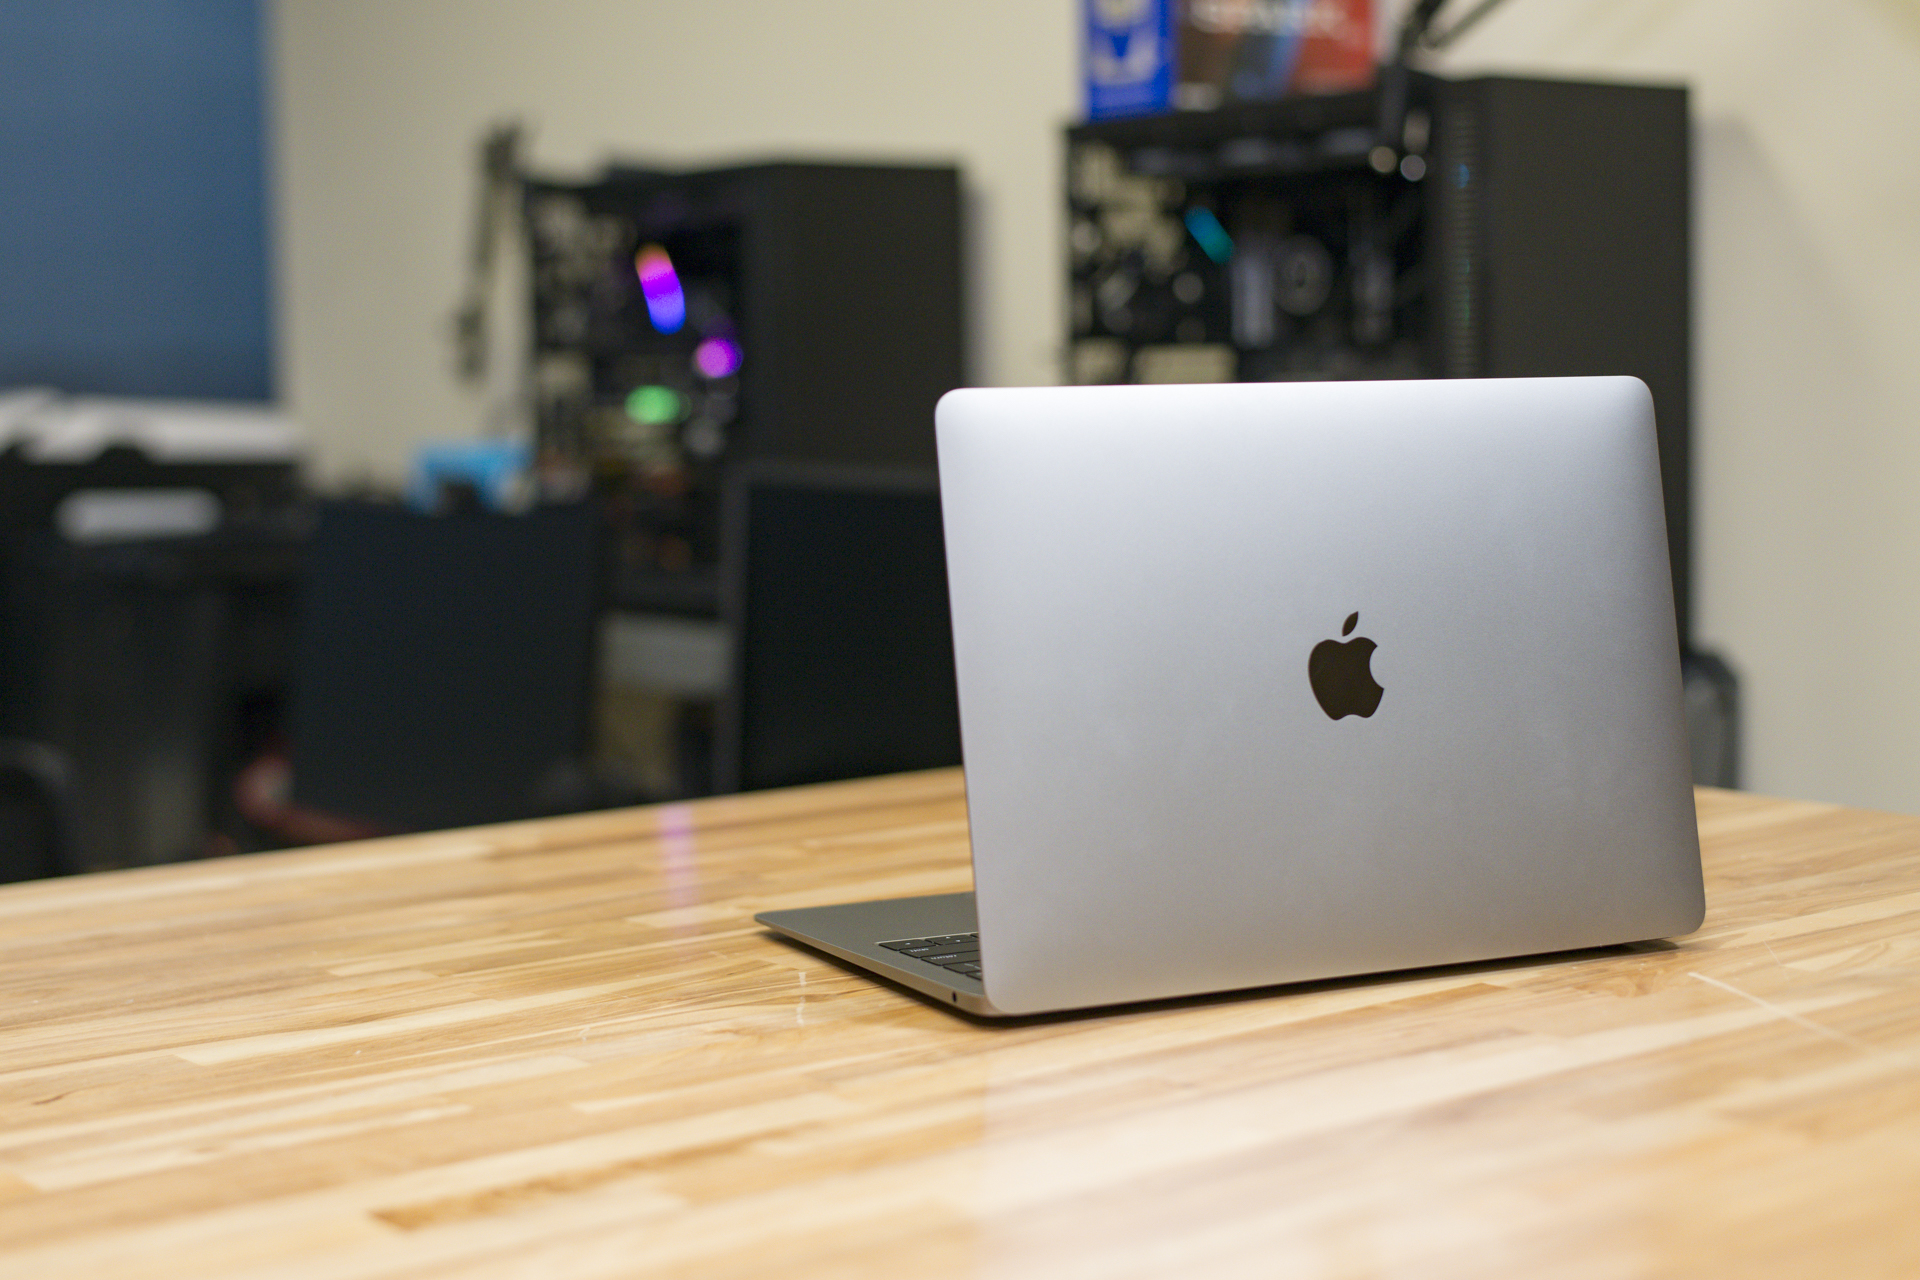 Meilleures offres et ventes de MacBook pour juin 2022